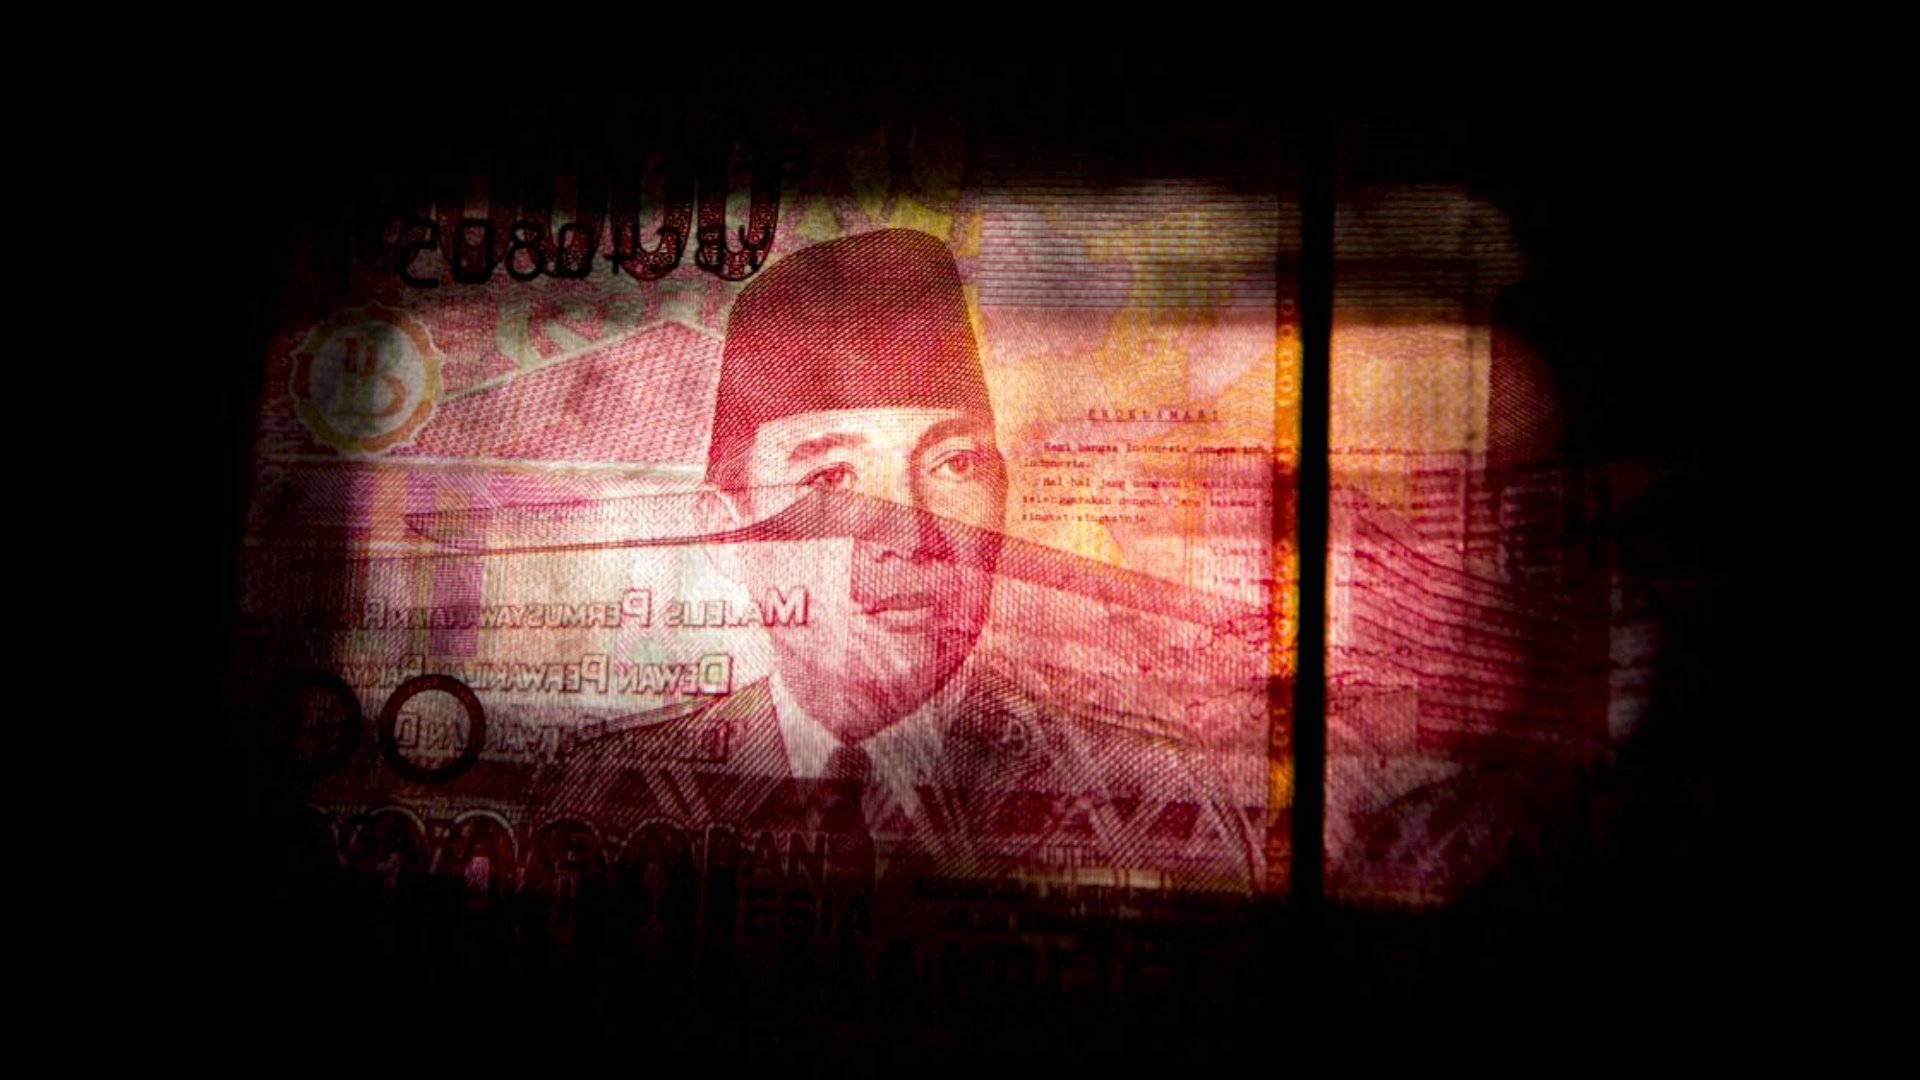 Potret wajah Mantan Presiden Sukarno dalam uang lembar Rp100.000. - Bloomberg/Brent Lewin